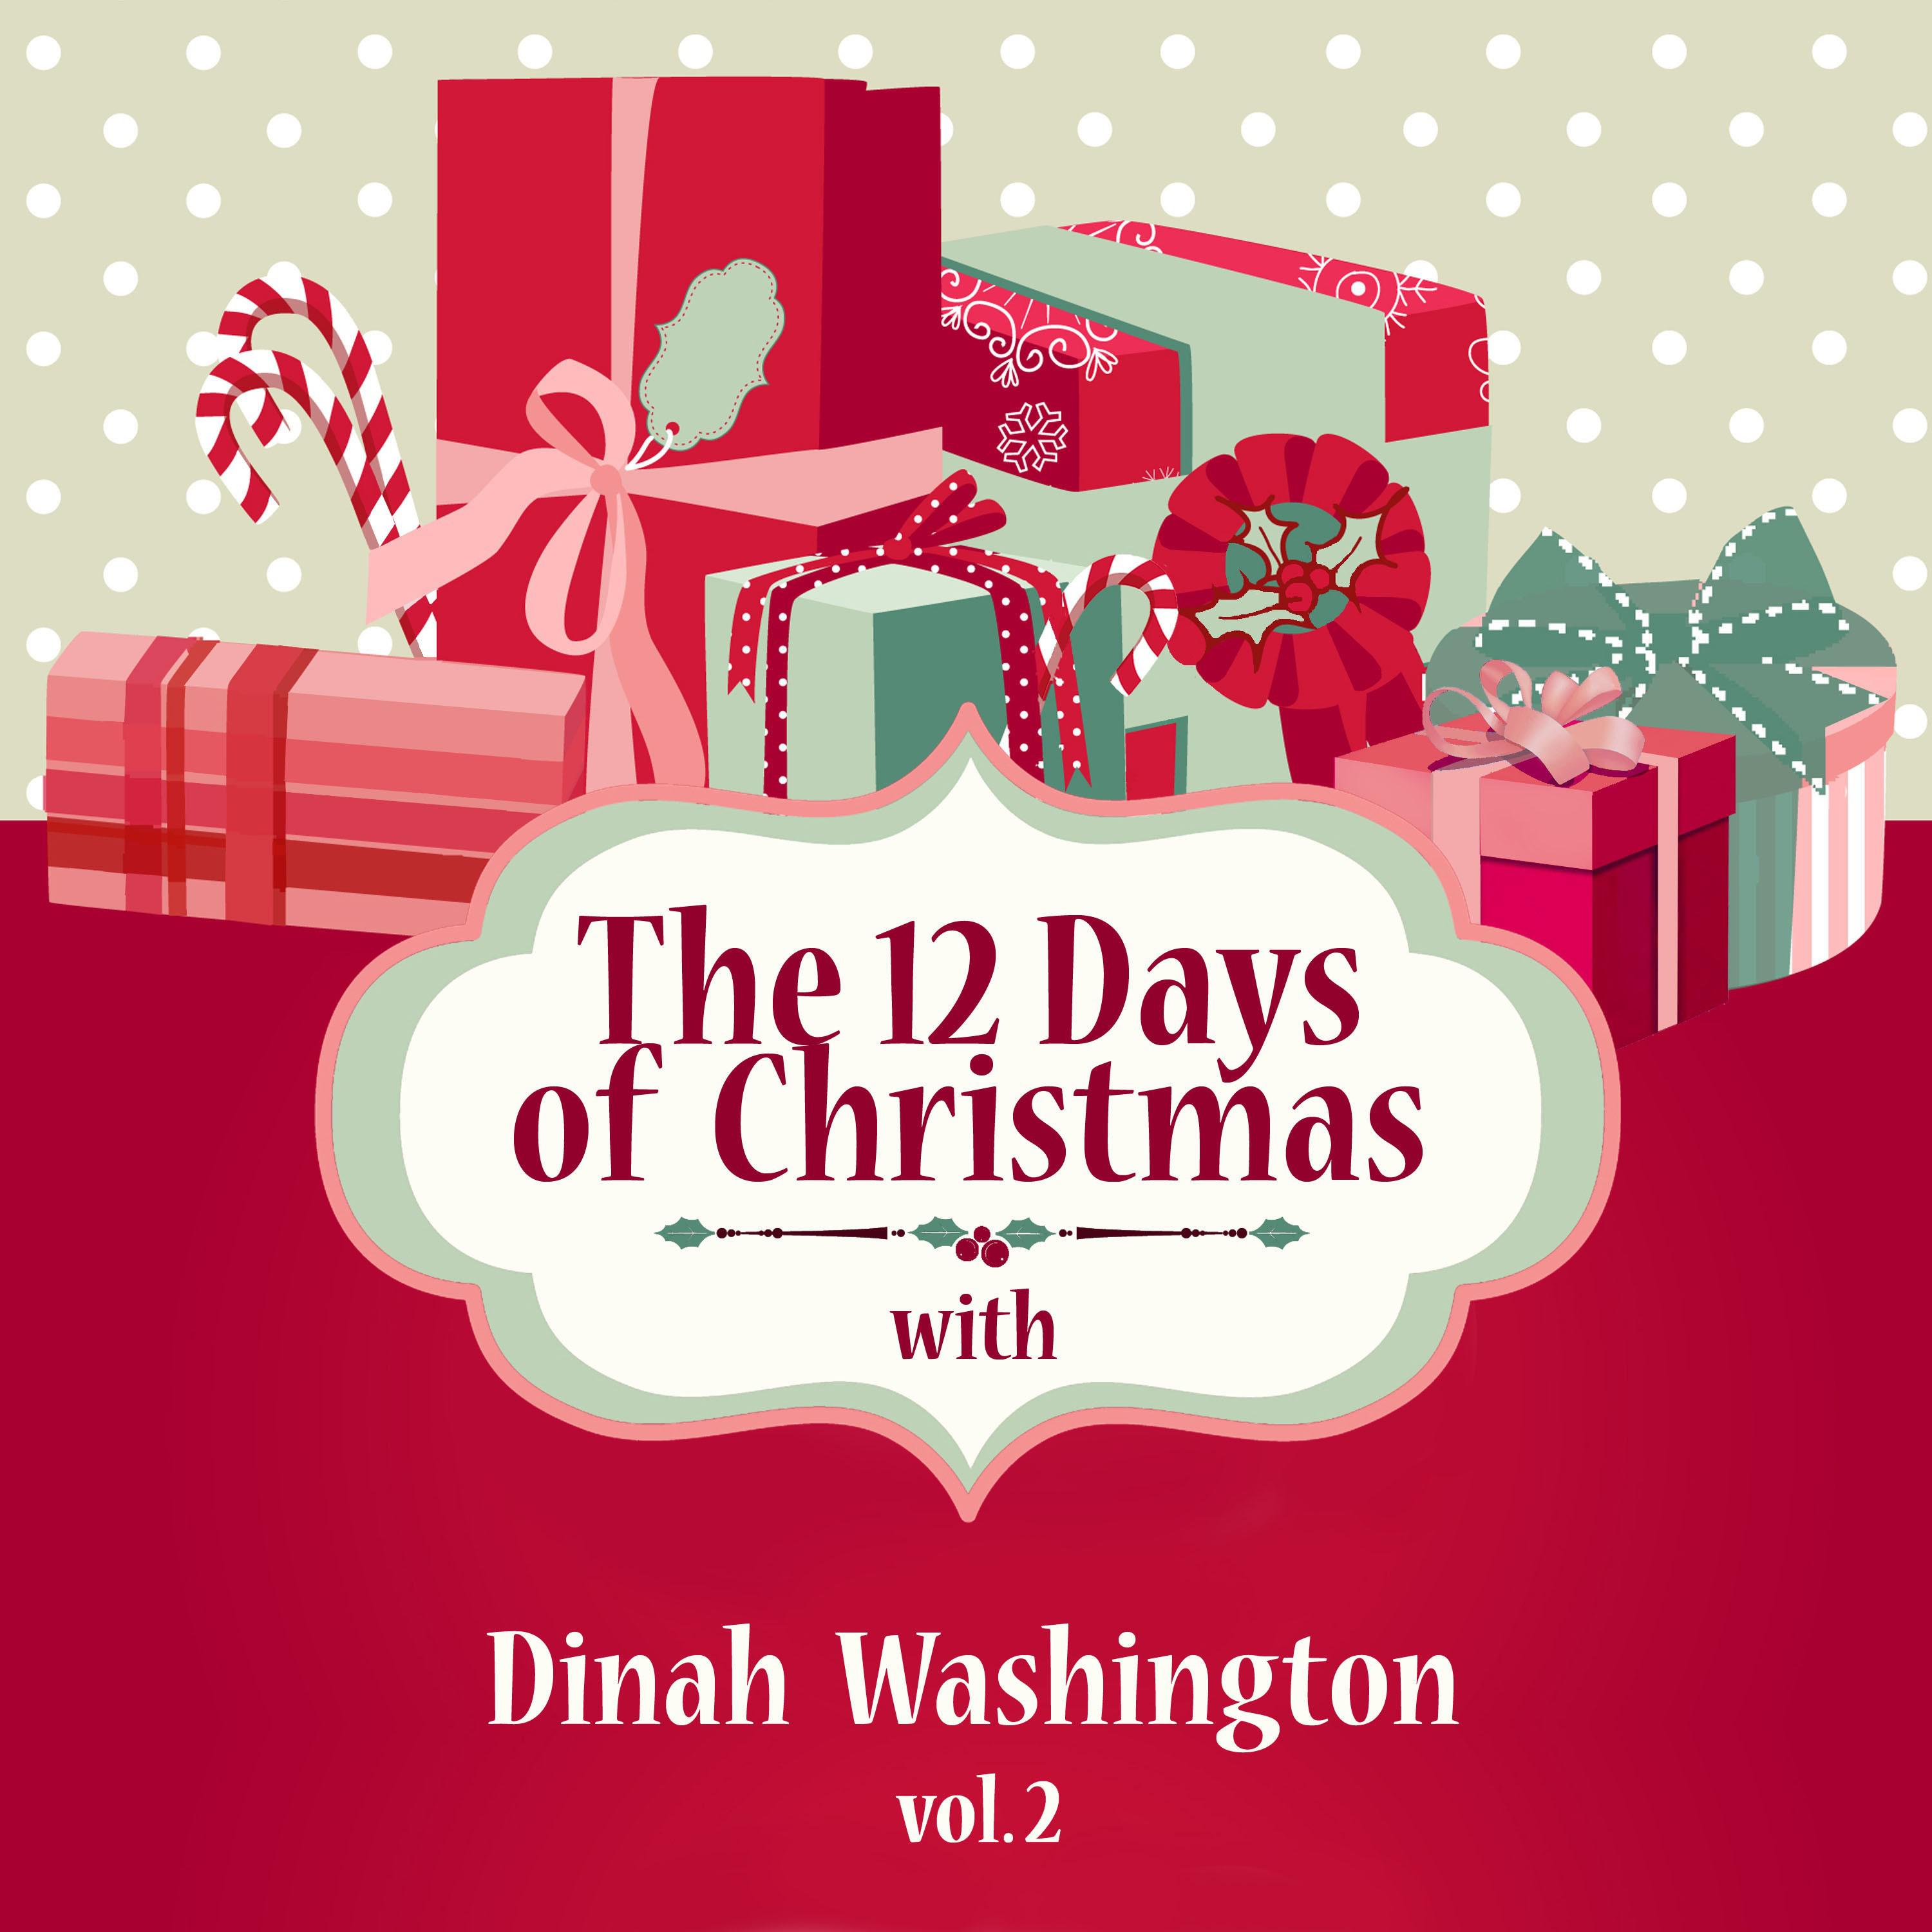 The 12 Days of Christmas with Dinah Washington, Vol. 2